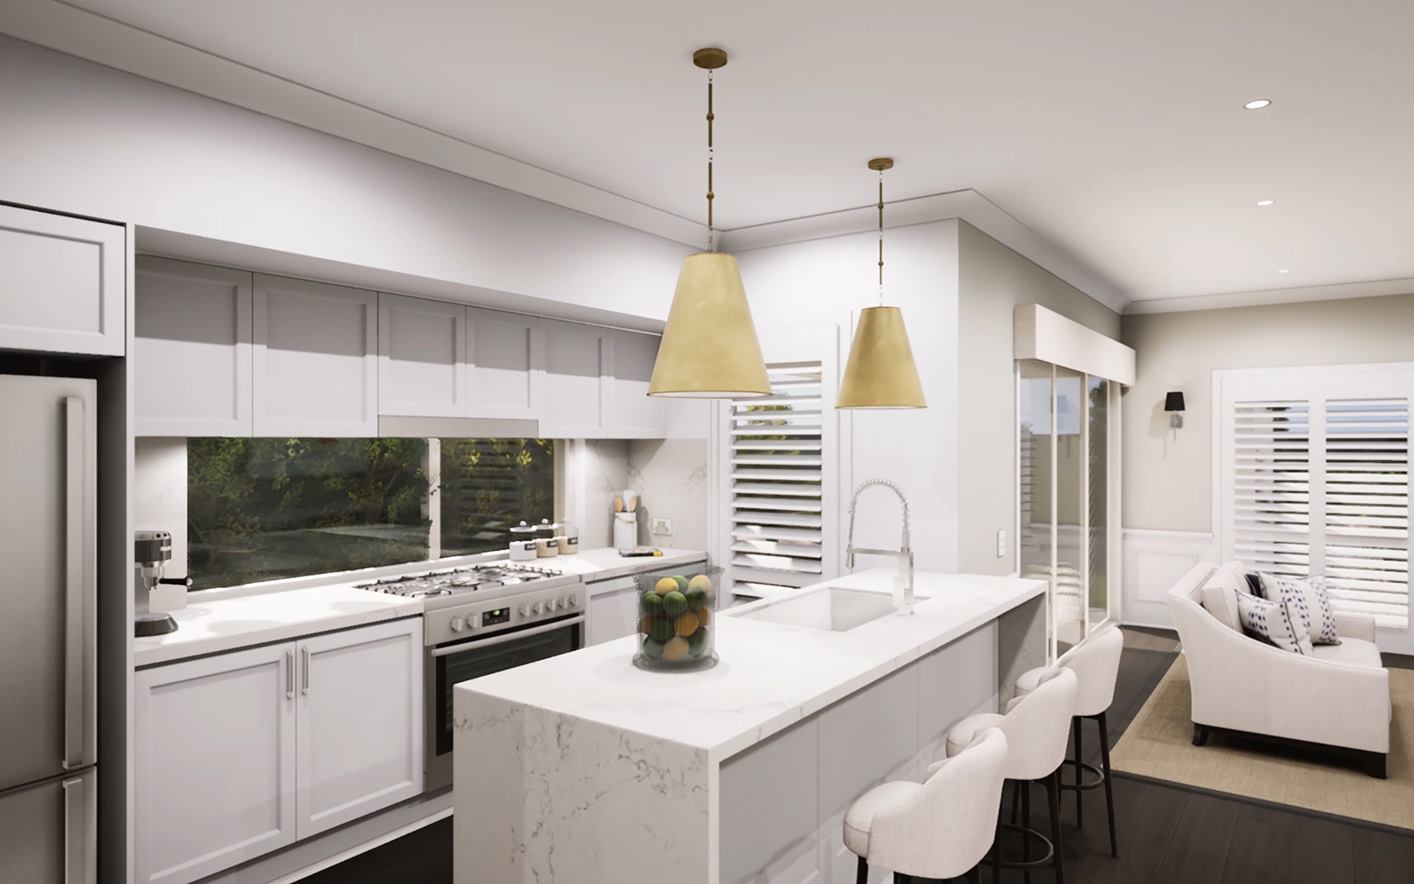 Duplex House Kitchen Interior Designs - burnsocial